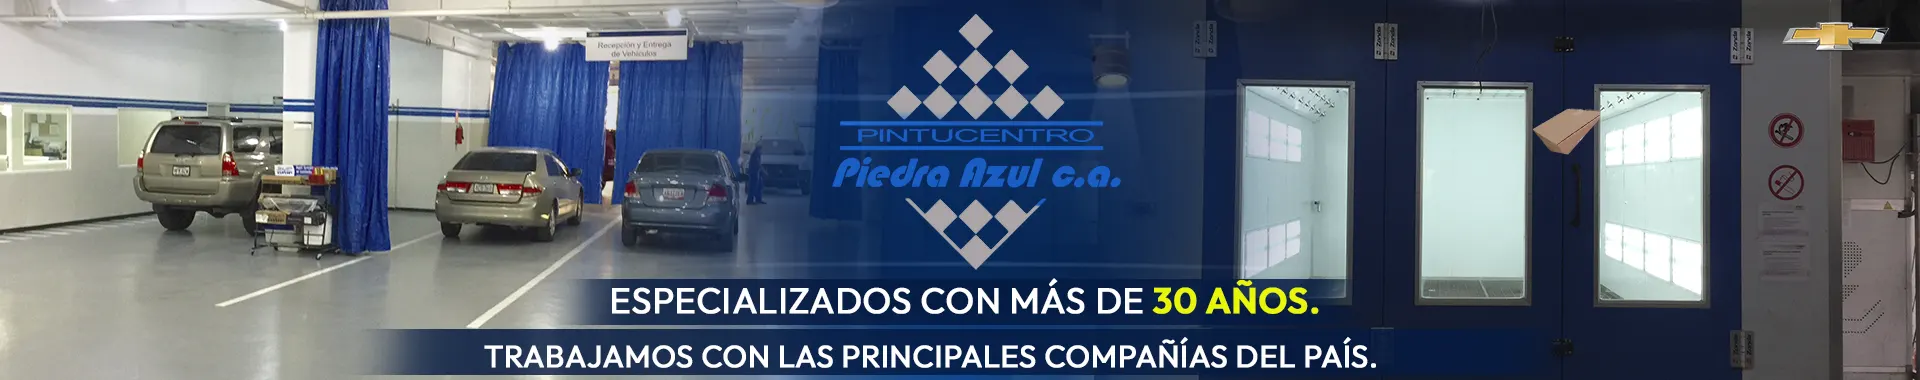 Imagen 4 del perfil de Pintucentro Piedra Azul